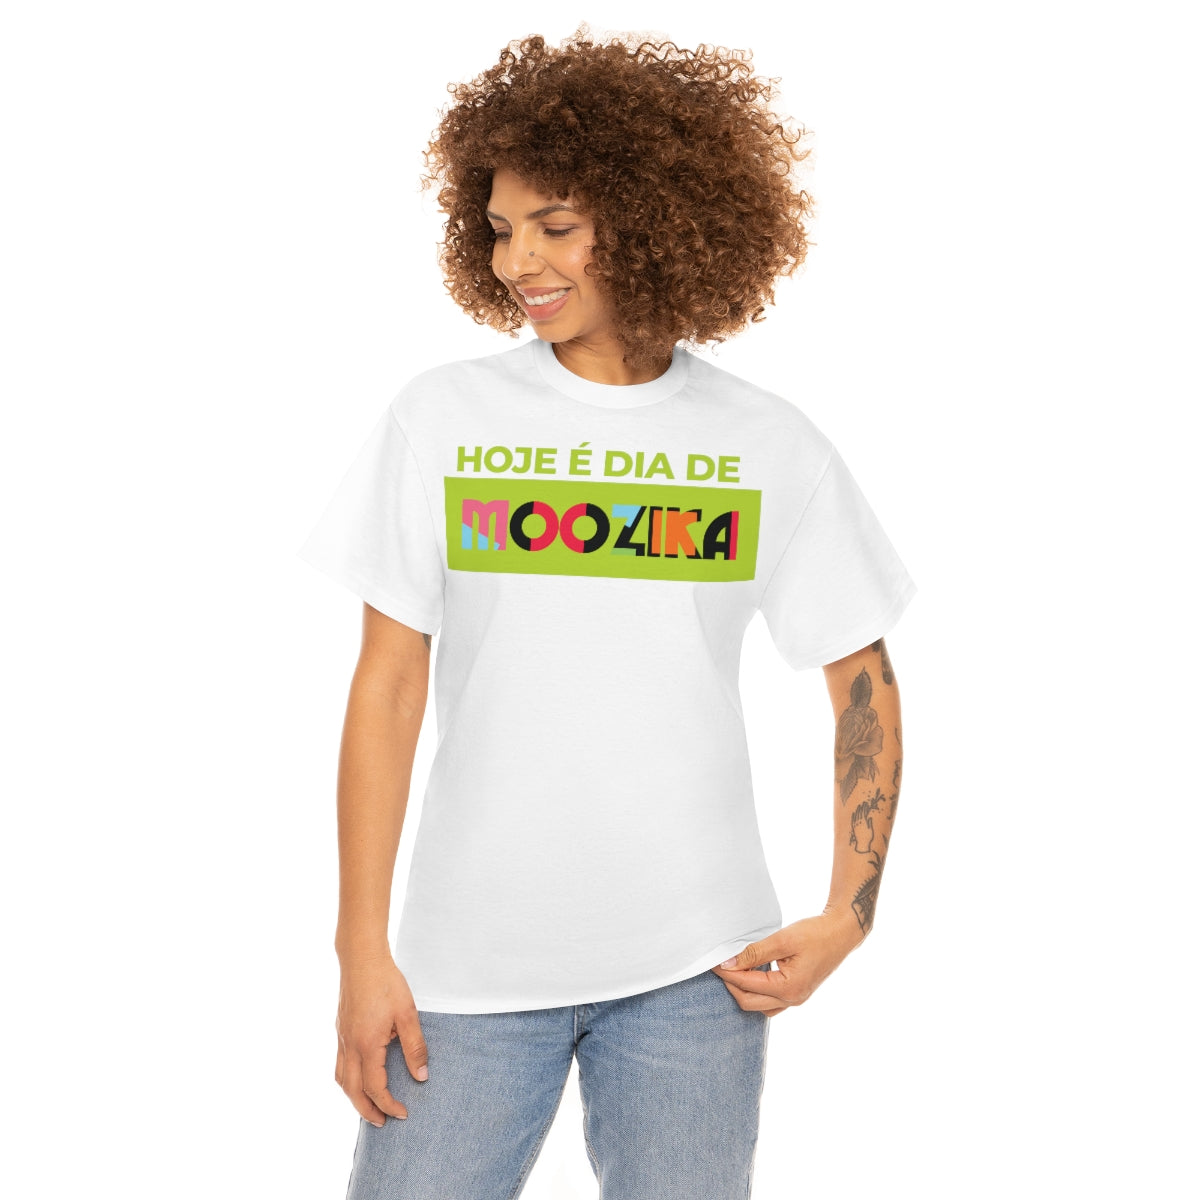 T-Shirt "Hoje é dia de Moozika"